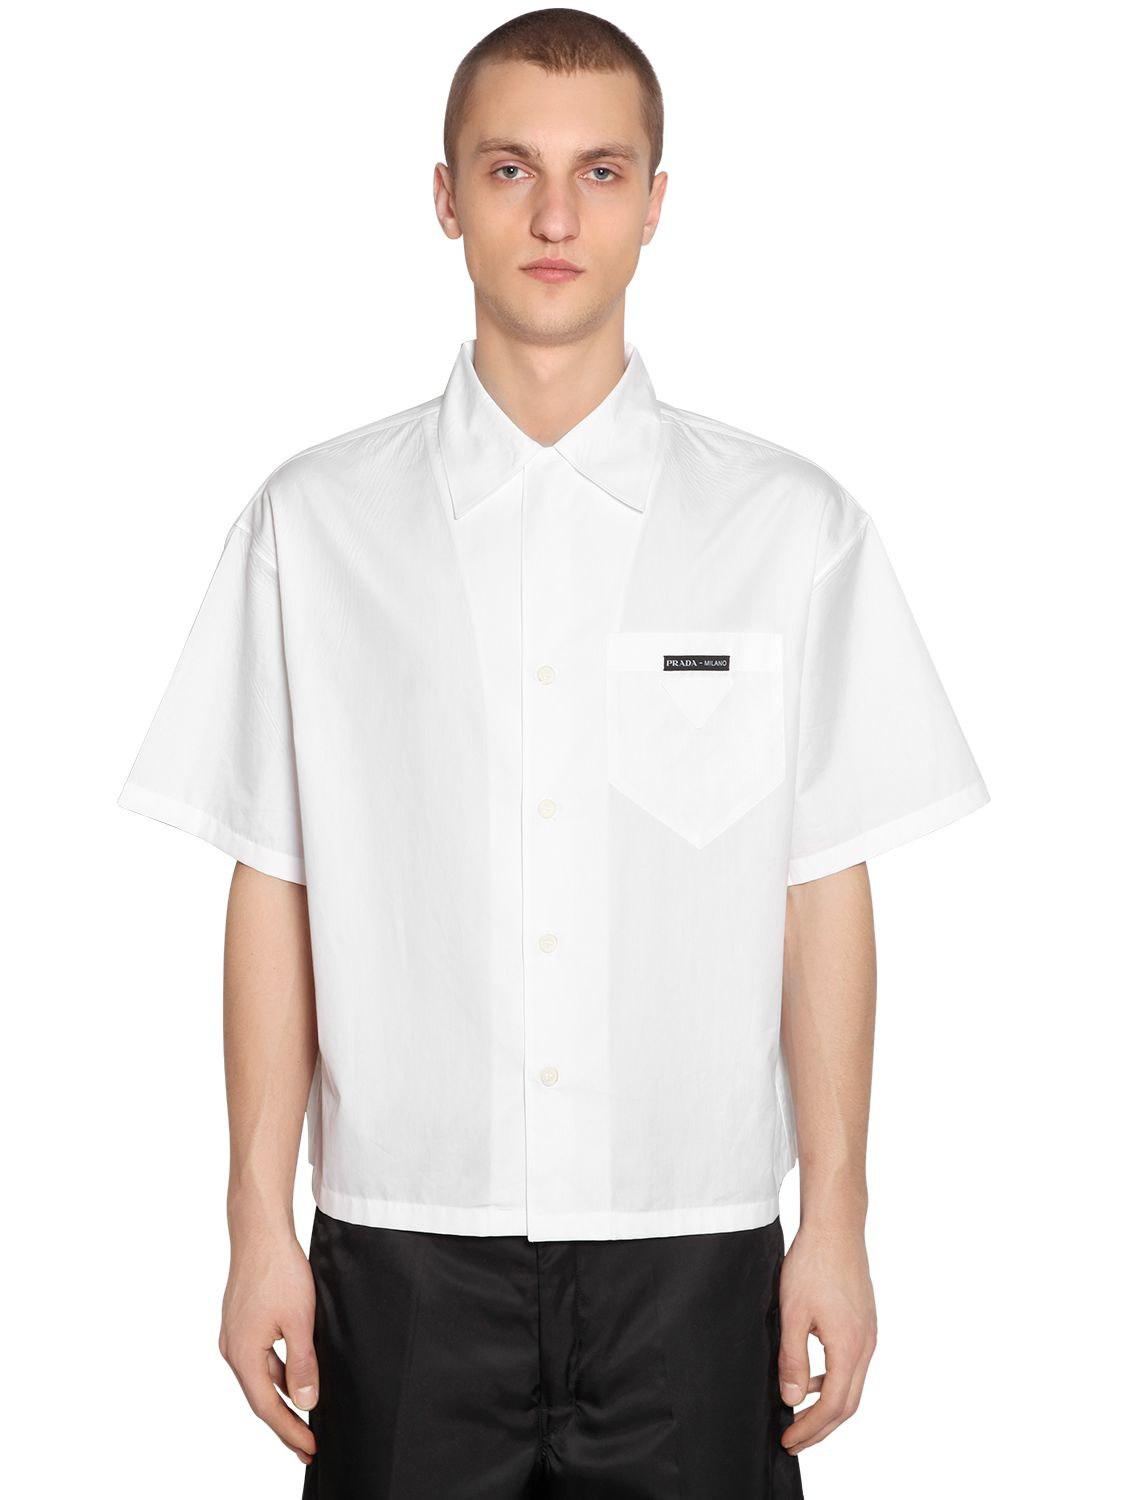 Prada Cotton Short-sleeved Poplin Shirt in White for Men - Lyst